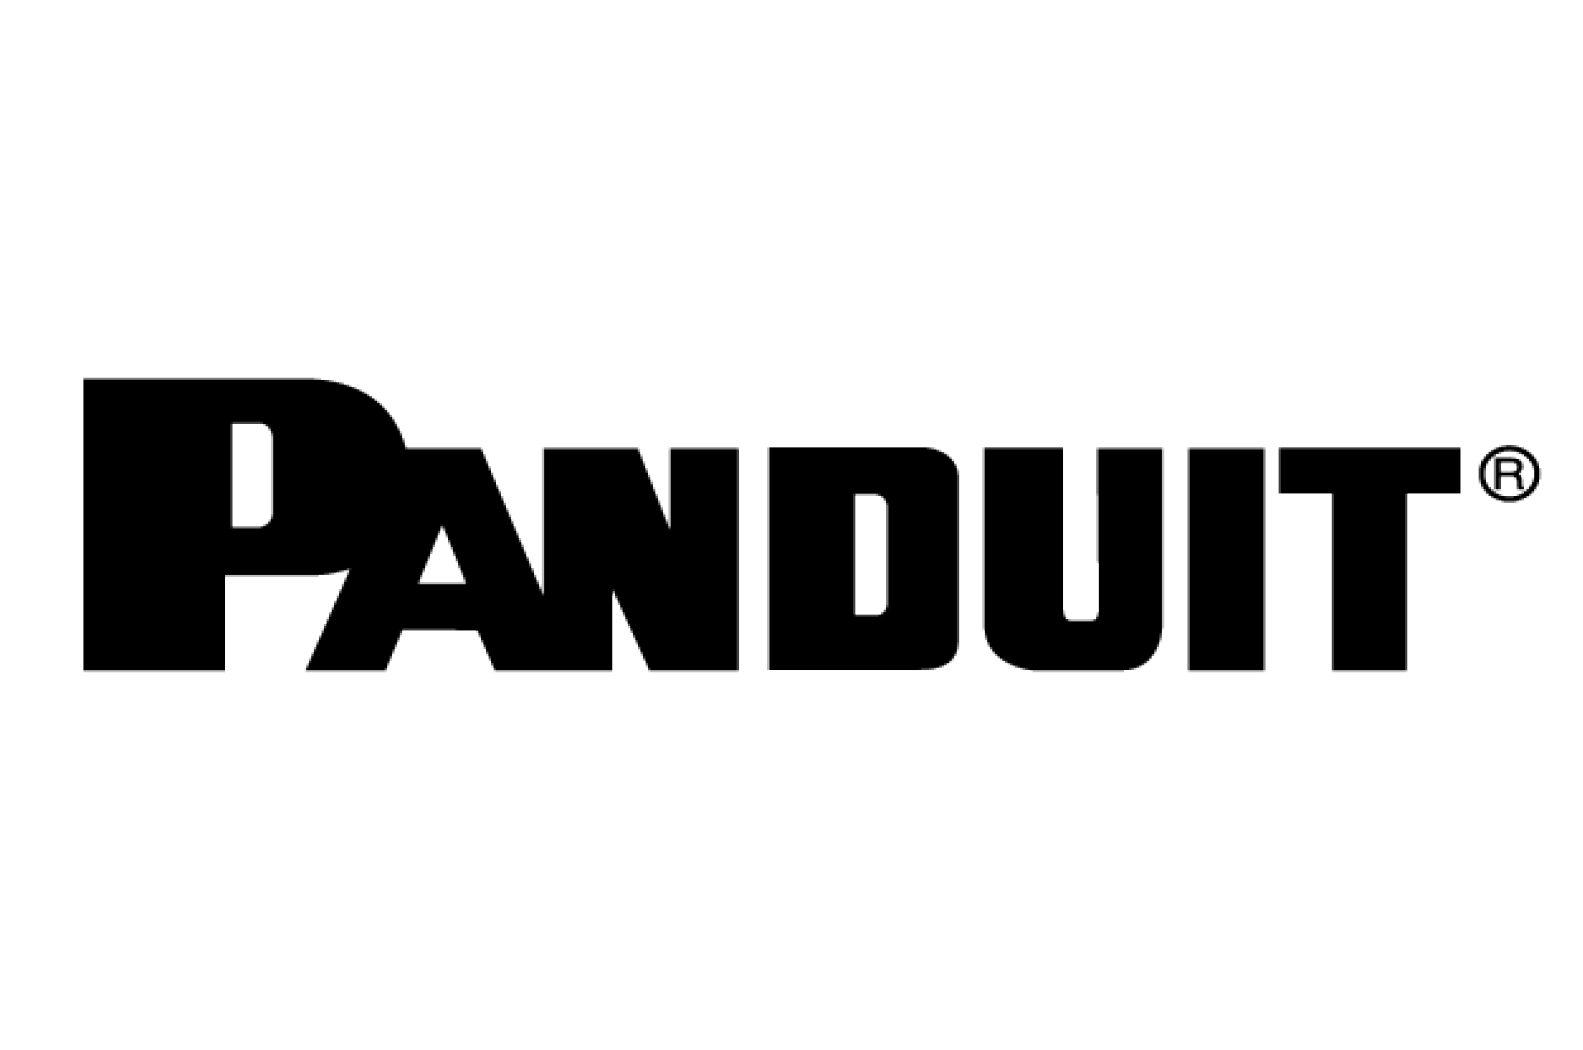 alt="Panduit logo"